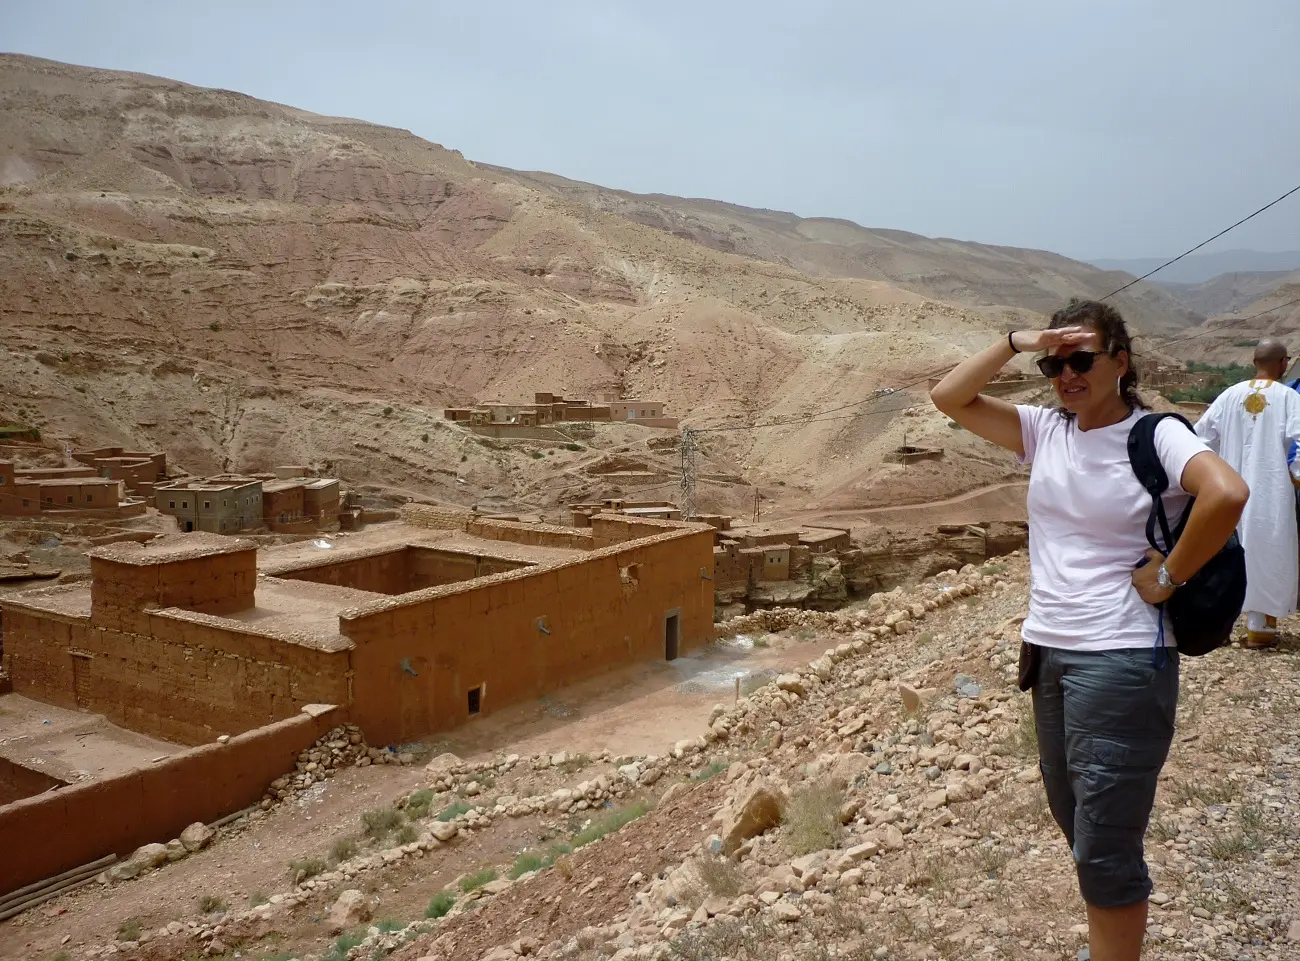 moda de marruecos - Cómo visten los turistas en Marruecos